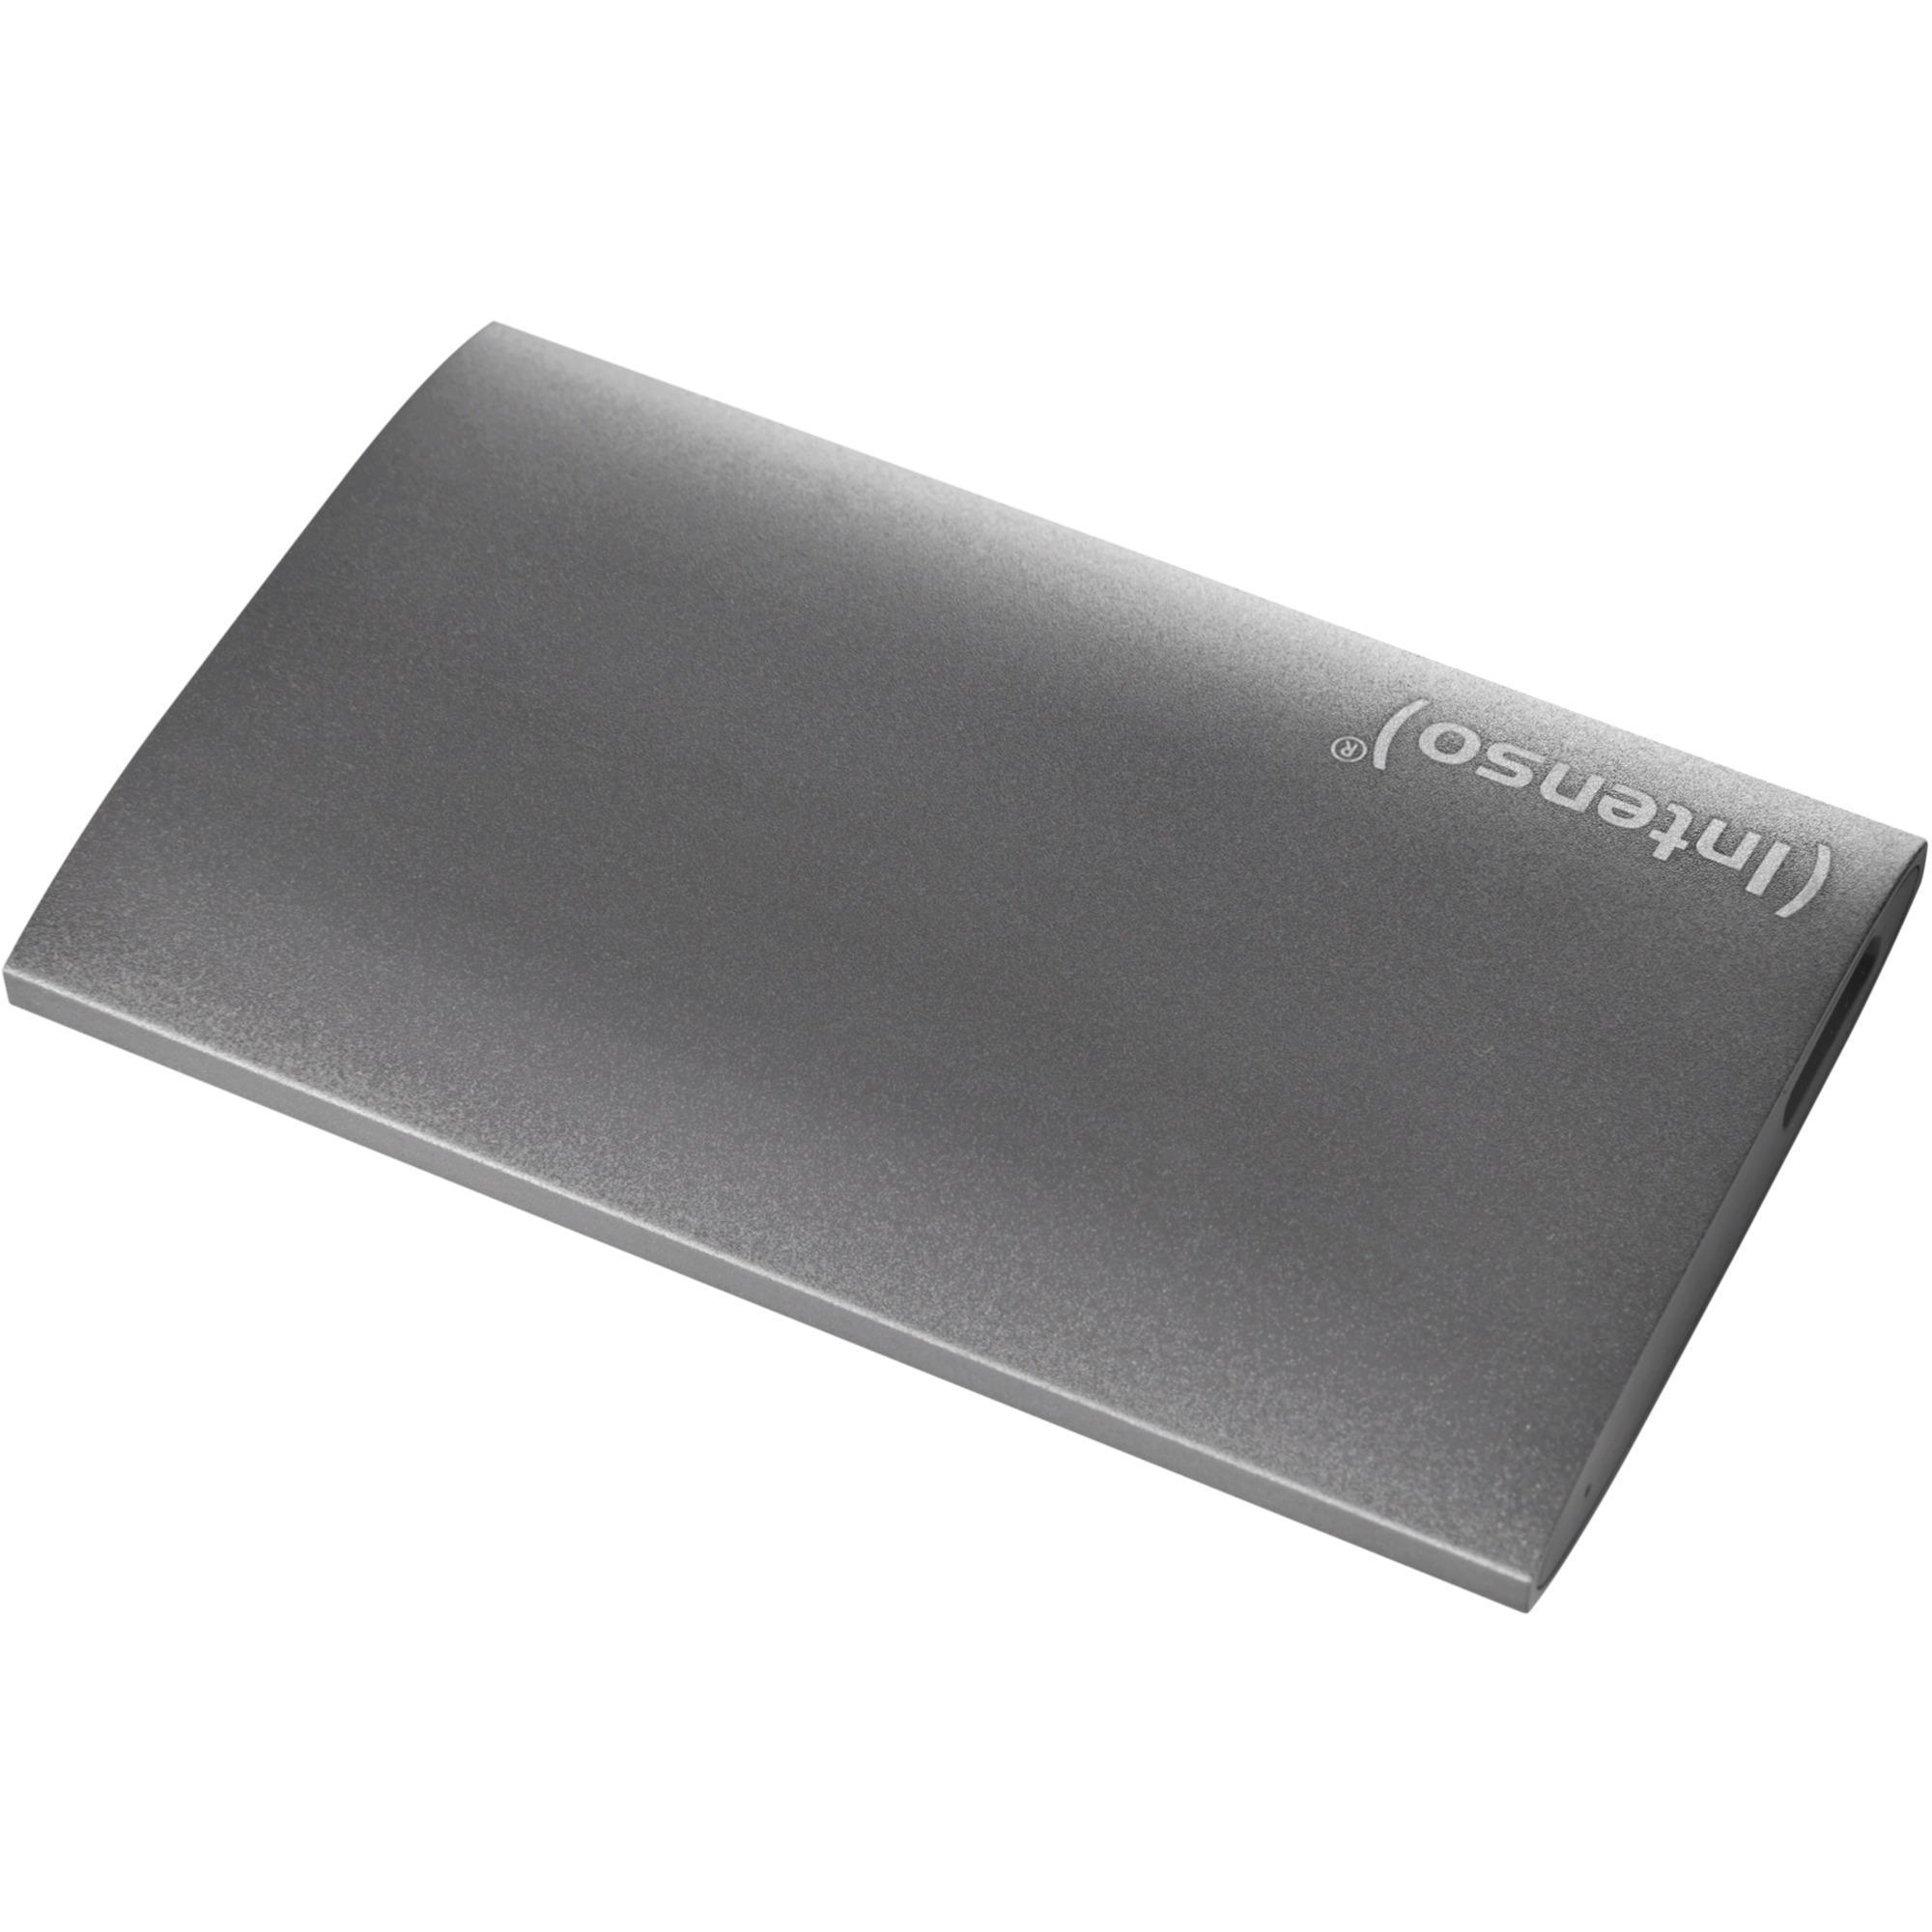 Image of Alternate - Portable SSD Premium 512 GB, Externe SSD online einkaufen bei Alternate